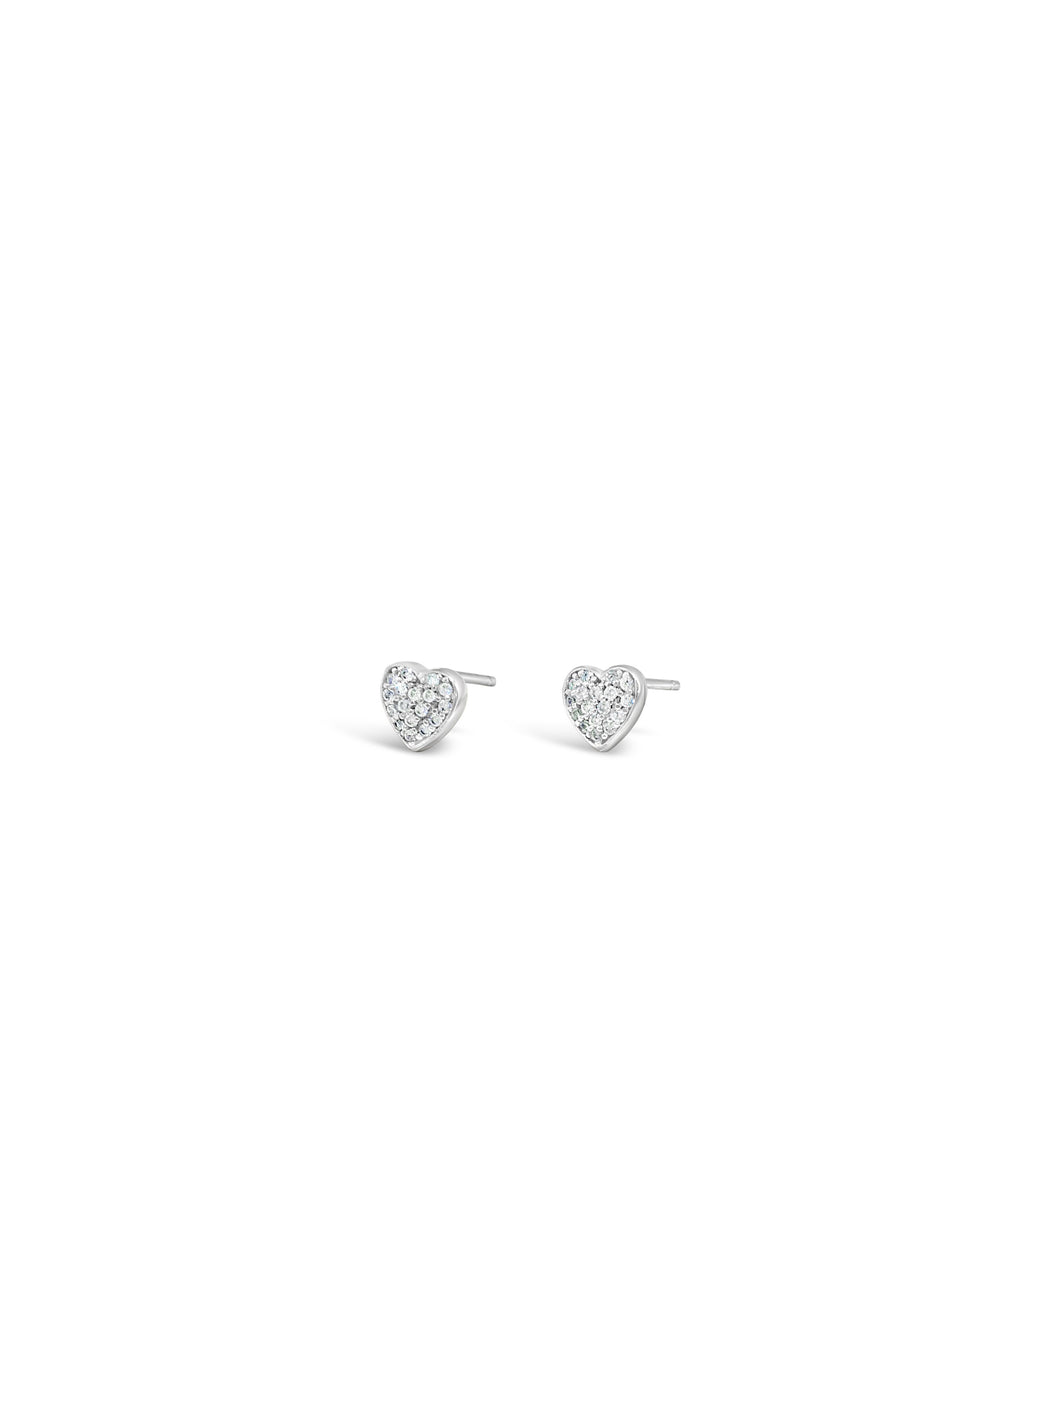 Absolute Jewellery Heart Earrings HCE411